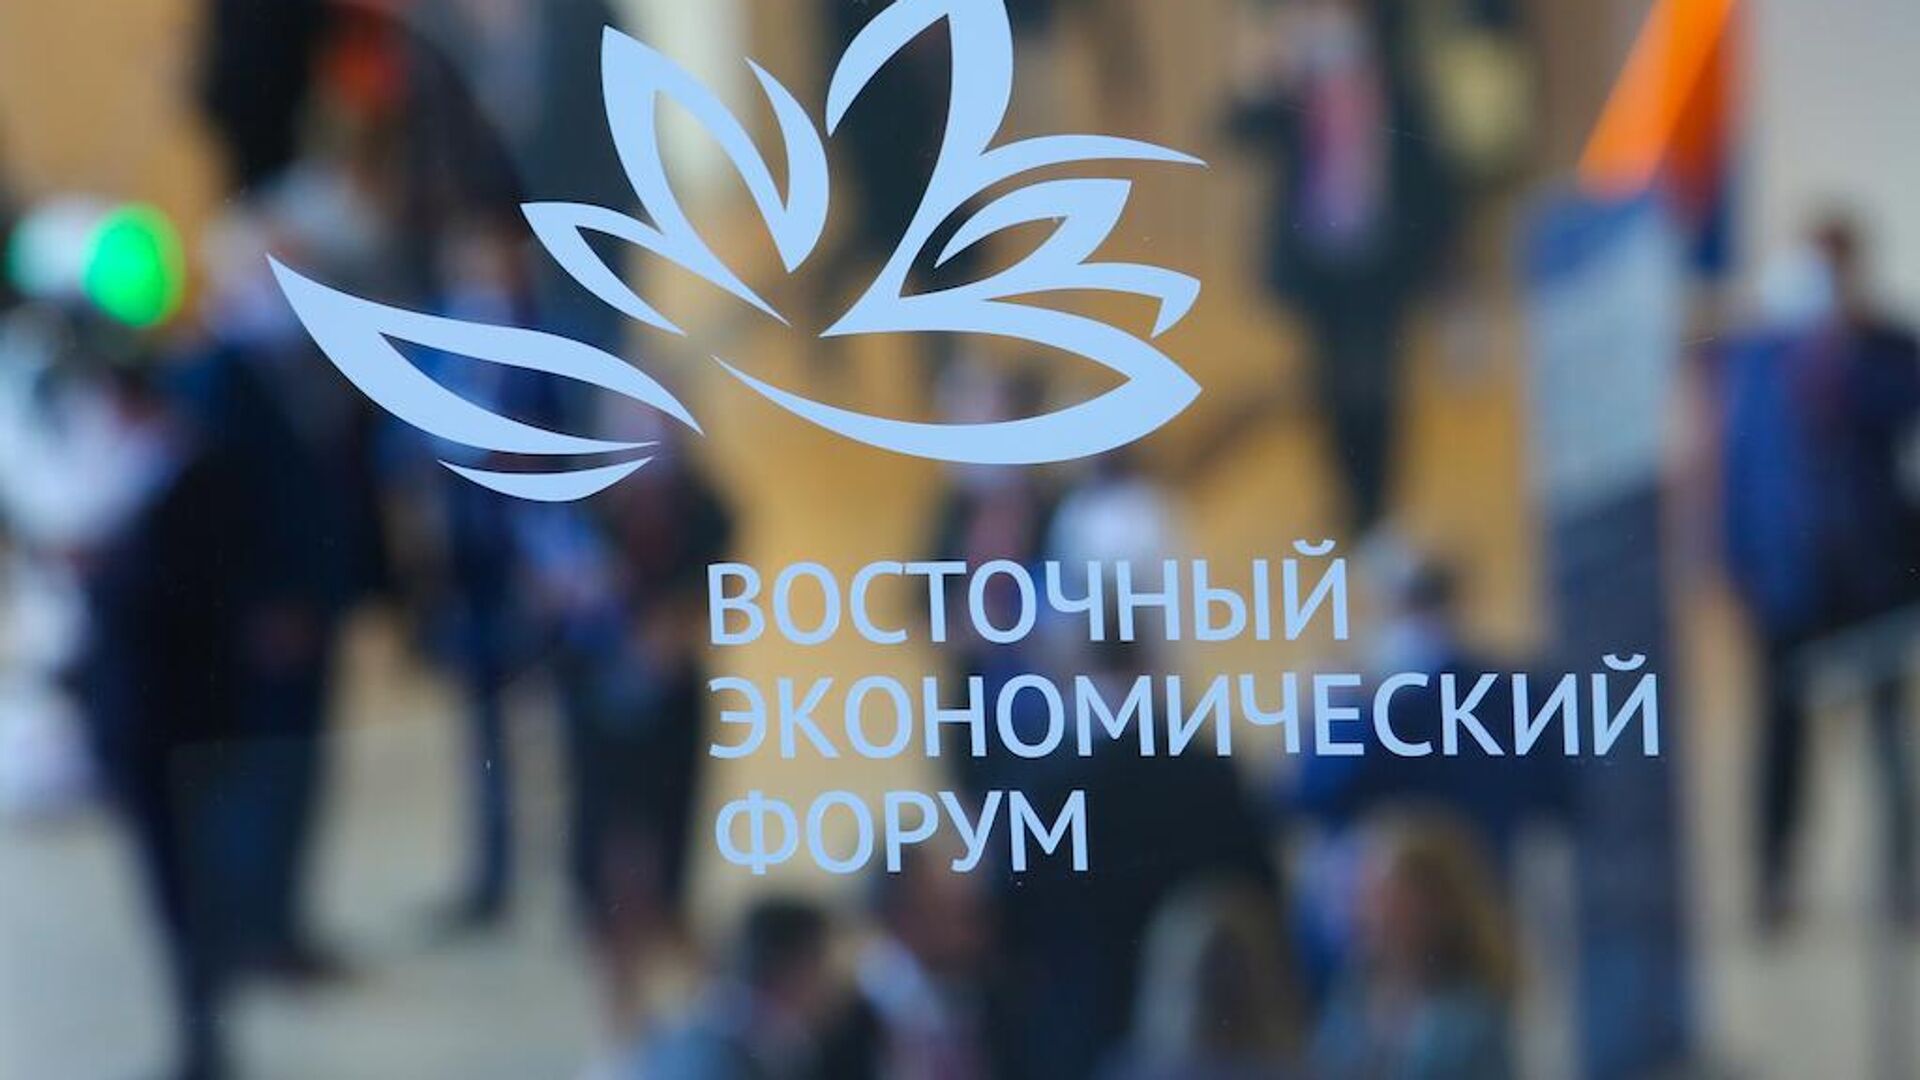 VII Восточный экономический форум-2022 состоится 5–8 сентября во Владивостоке